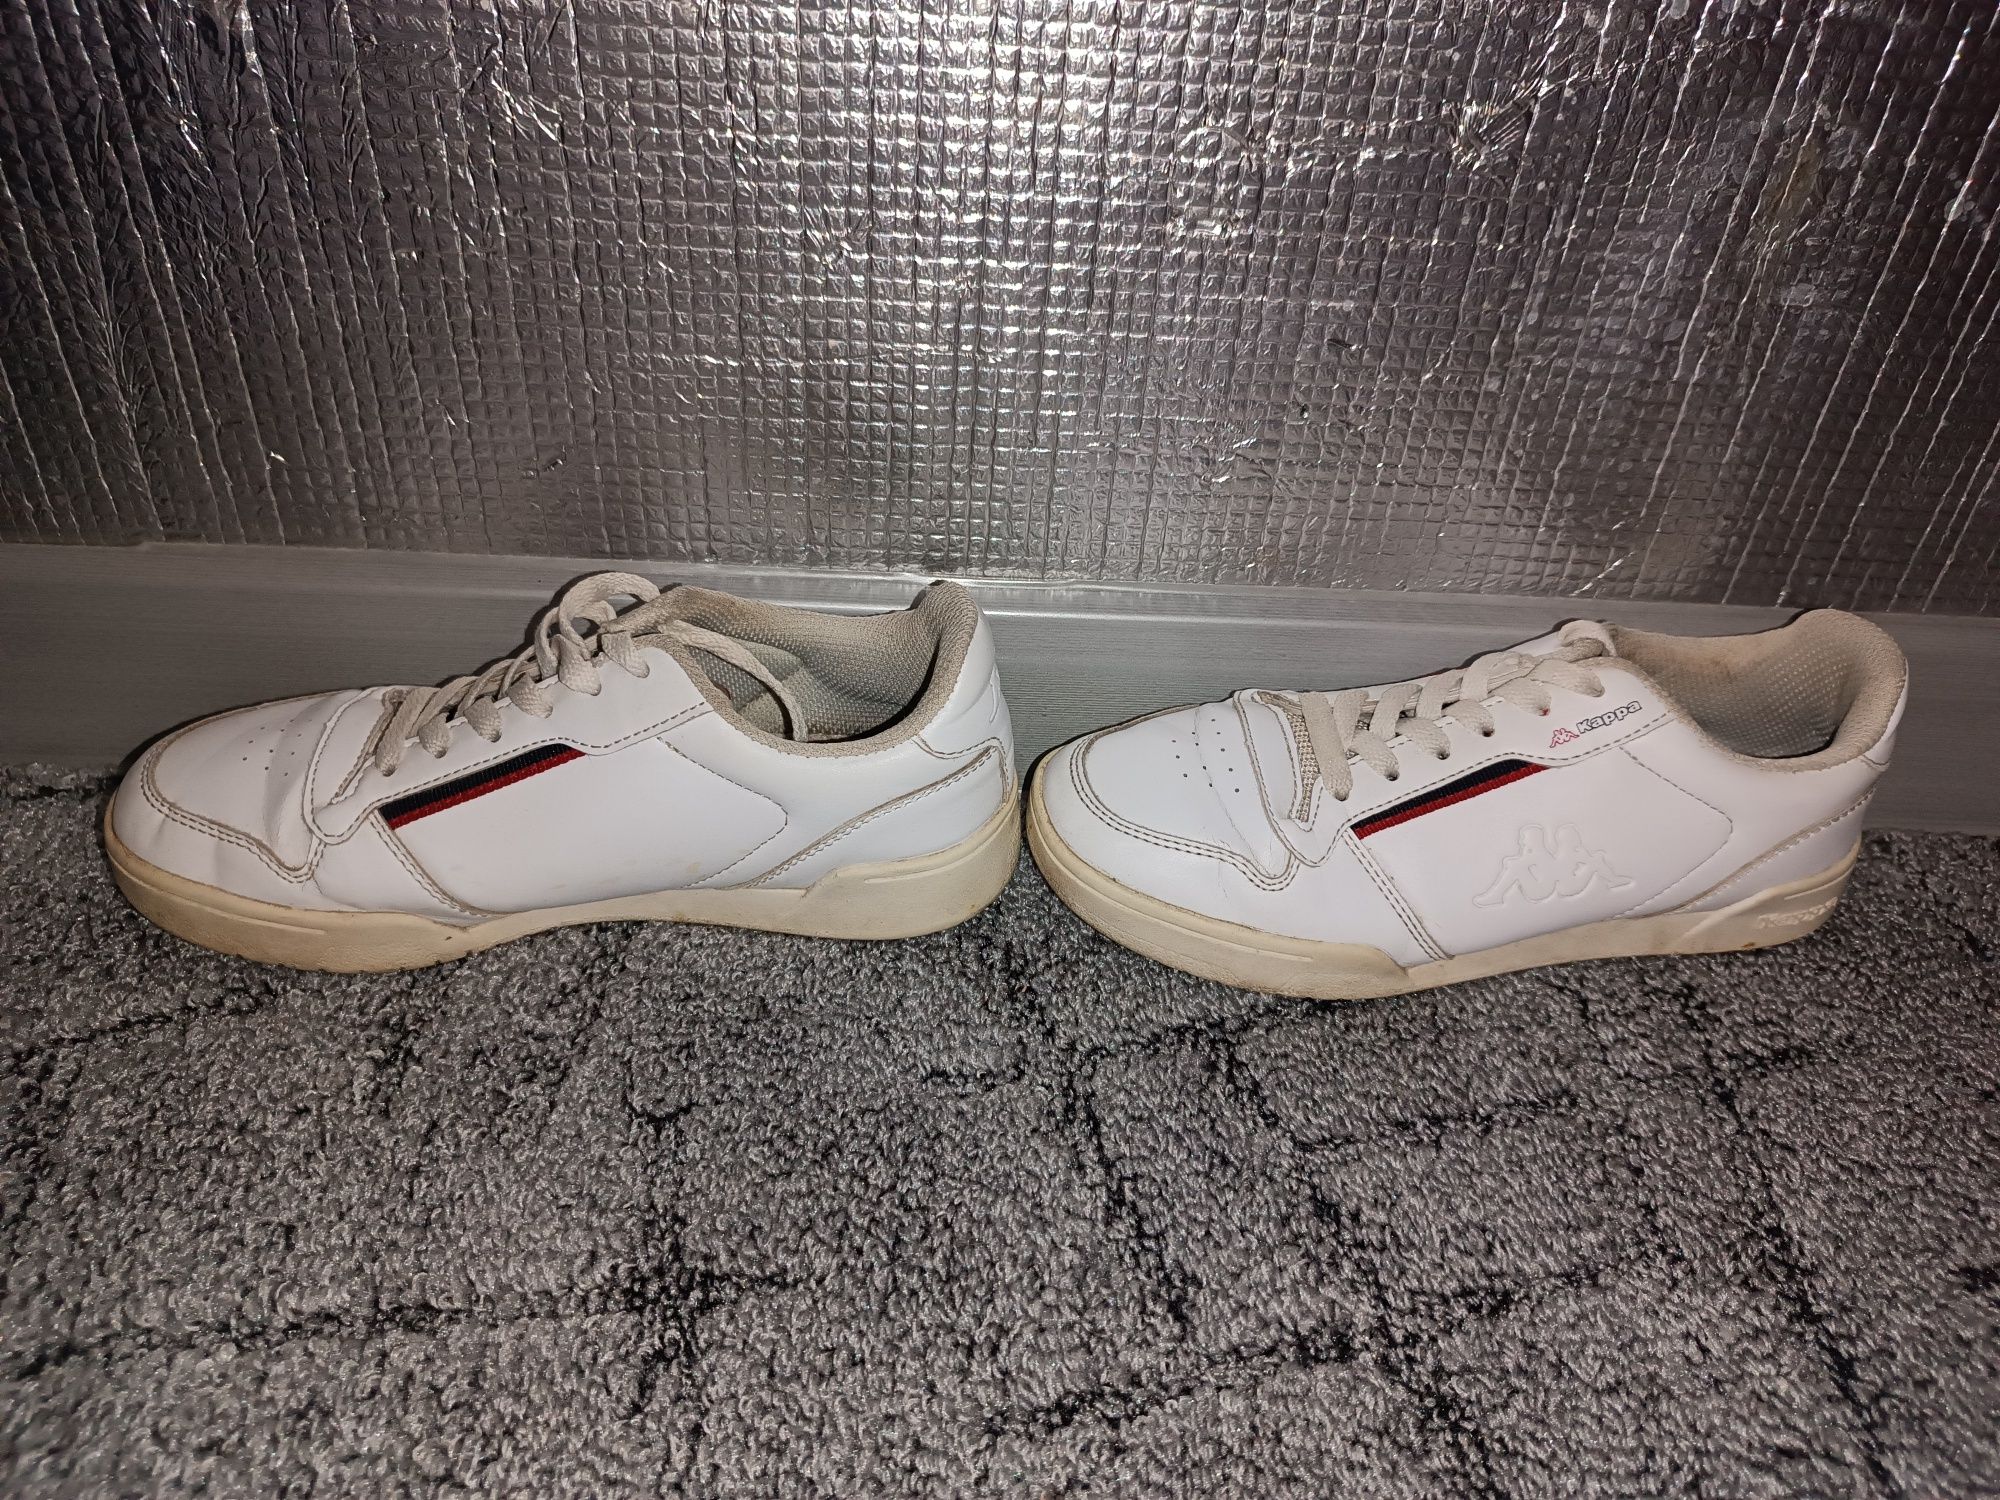 Kappa marabu мужские кроссовки 36-37 размер бело/красный